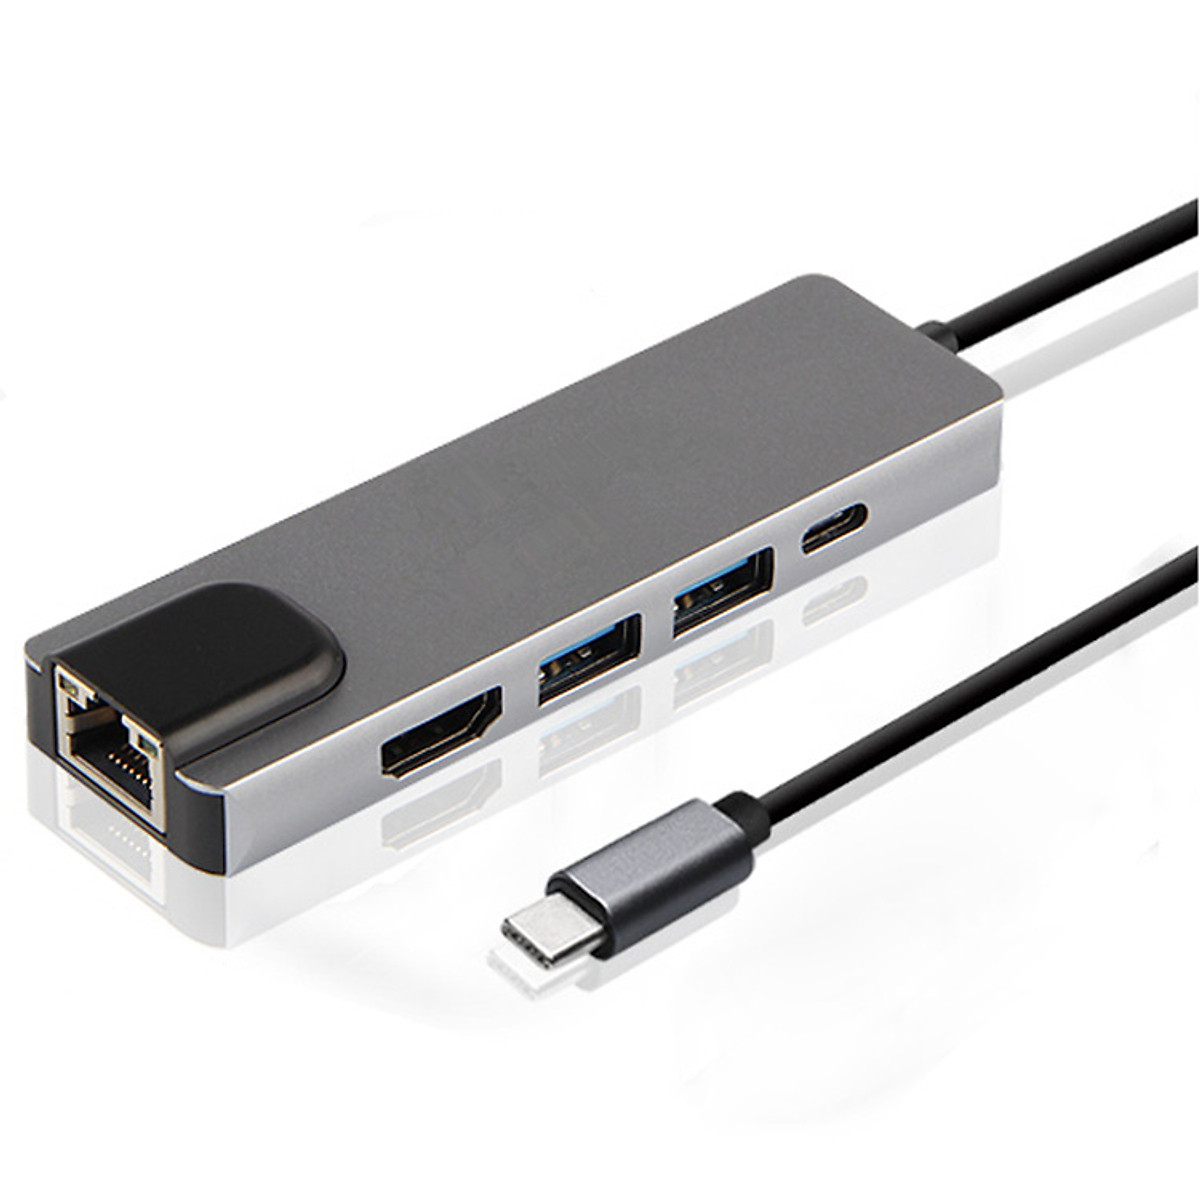 Hub USB Type C 5 in 1 To HDMI, RJ45, 2 x USB 3.0, USB Type C - Màu Ngẫu Nhiên (F1)